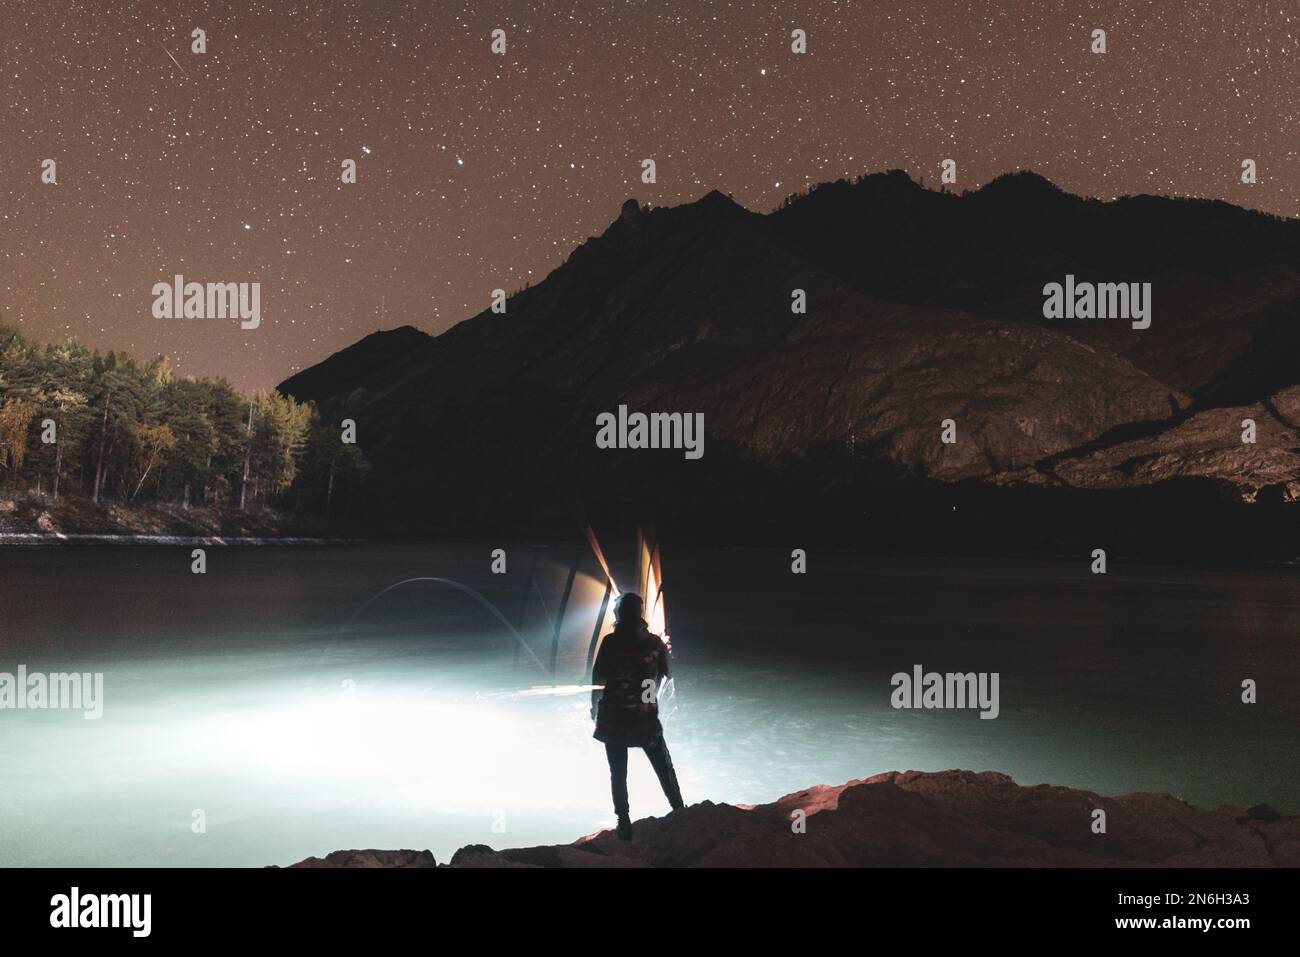 La silhouette di una ragazza pescatore con una lanterna ondeggia una canna da pesca di notte sulla riva del fiume sotto una roccia con stelle in Altai in Siberia. Foto Stock